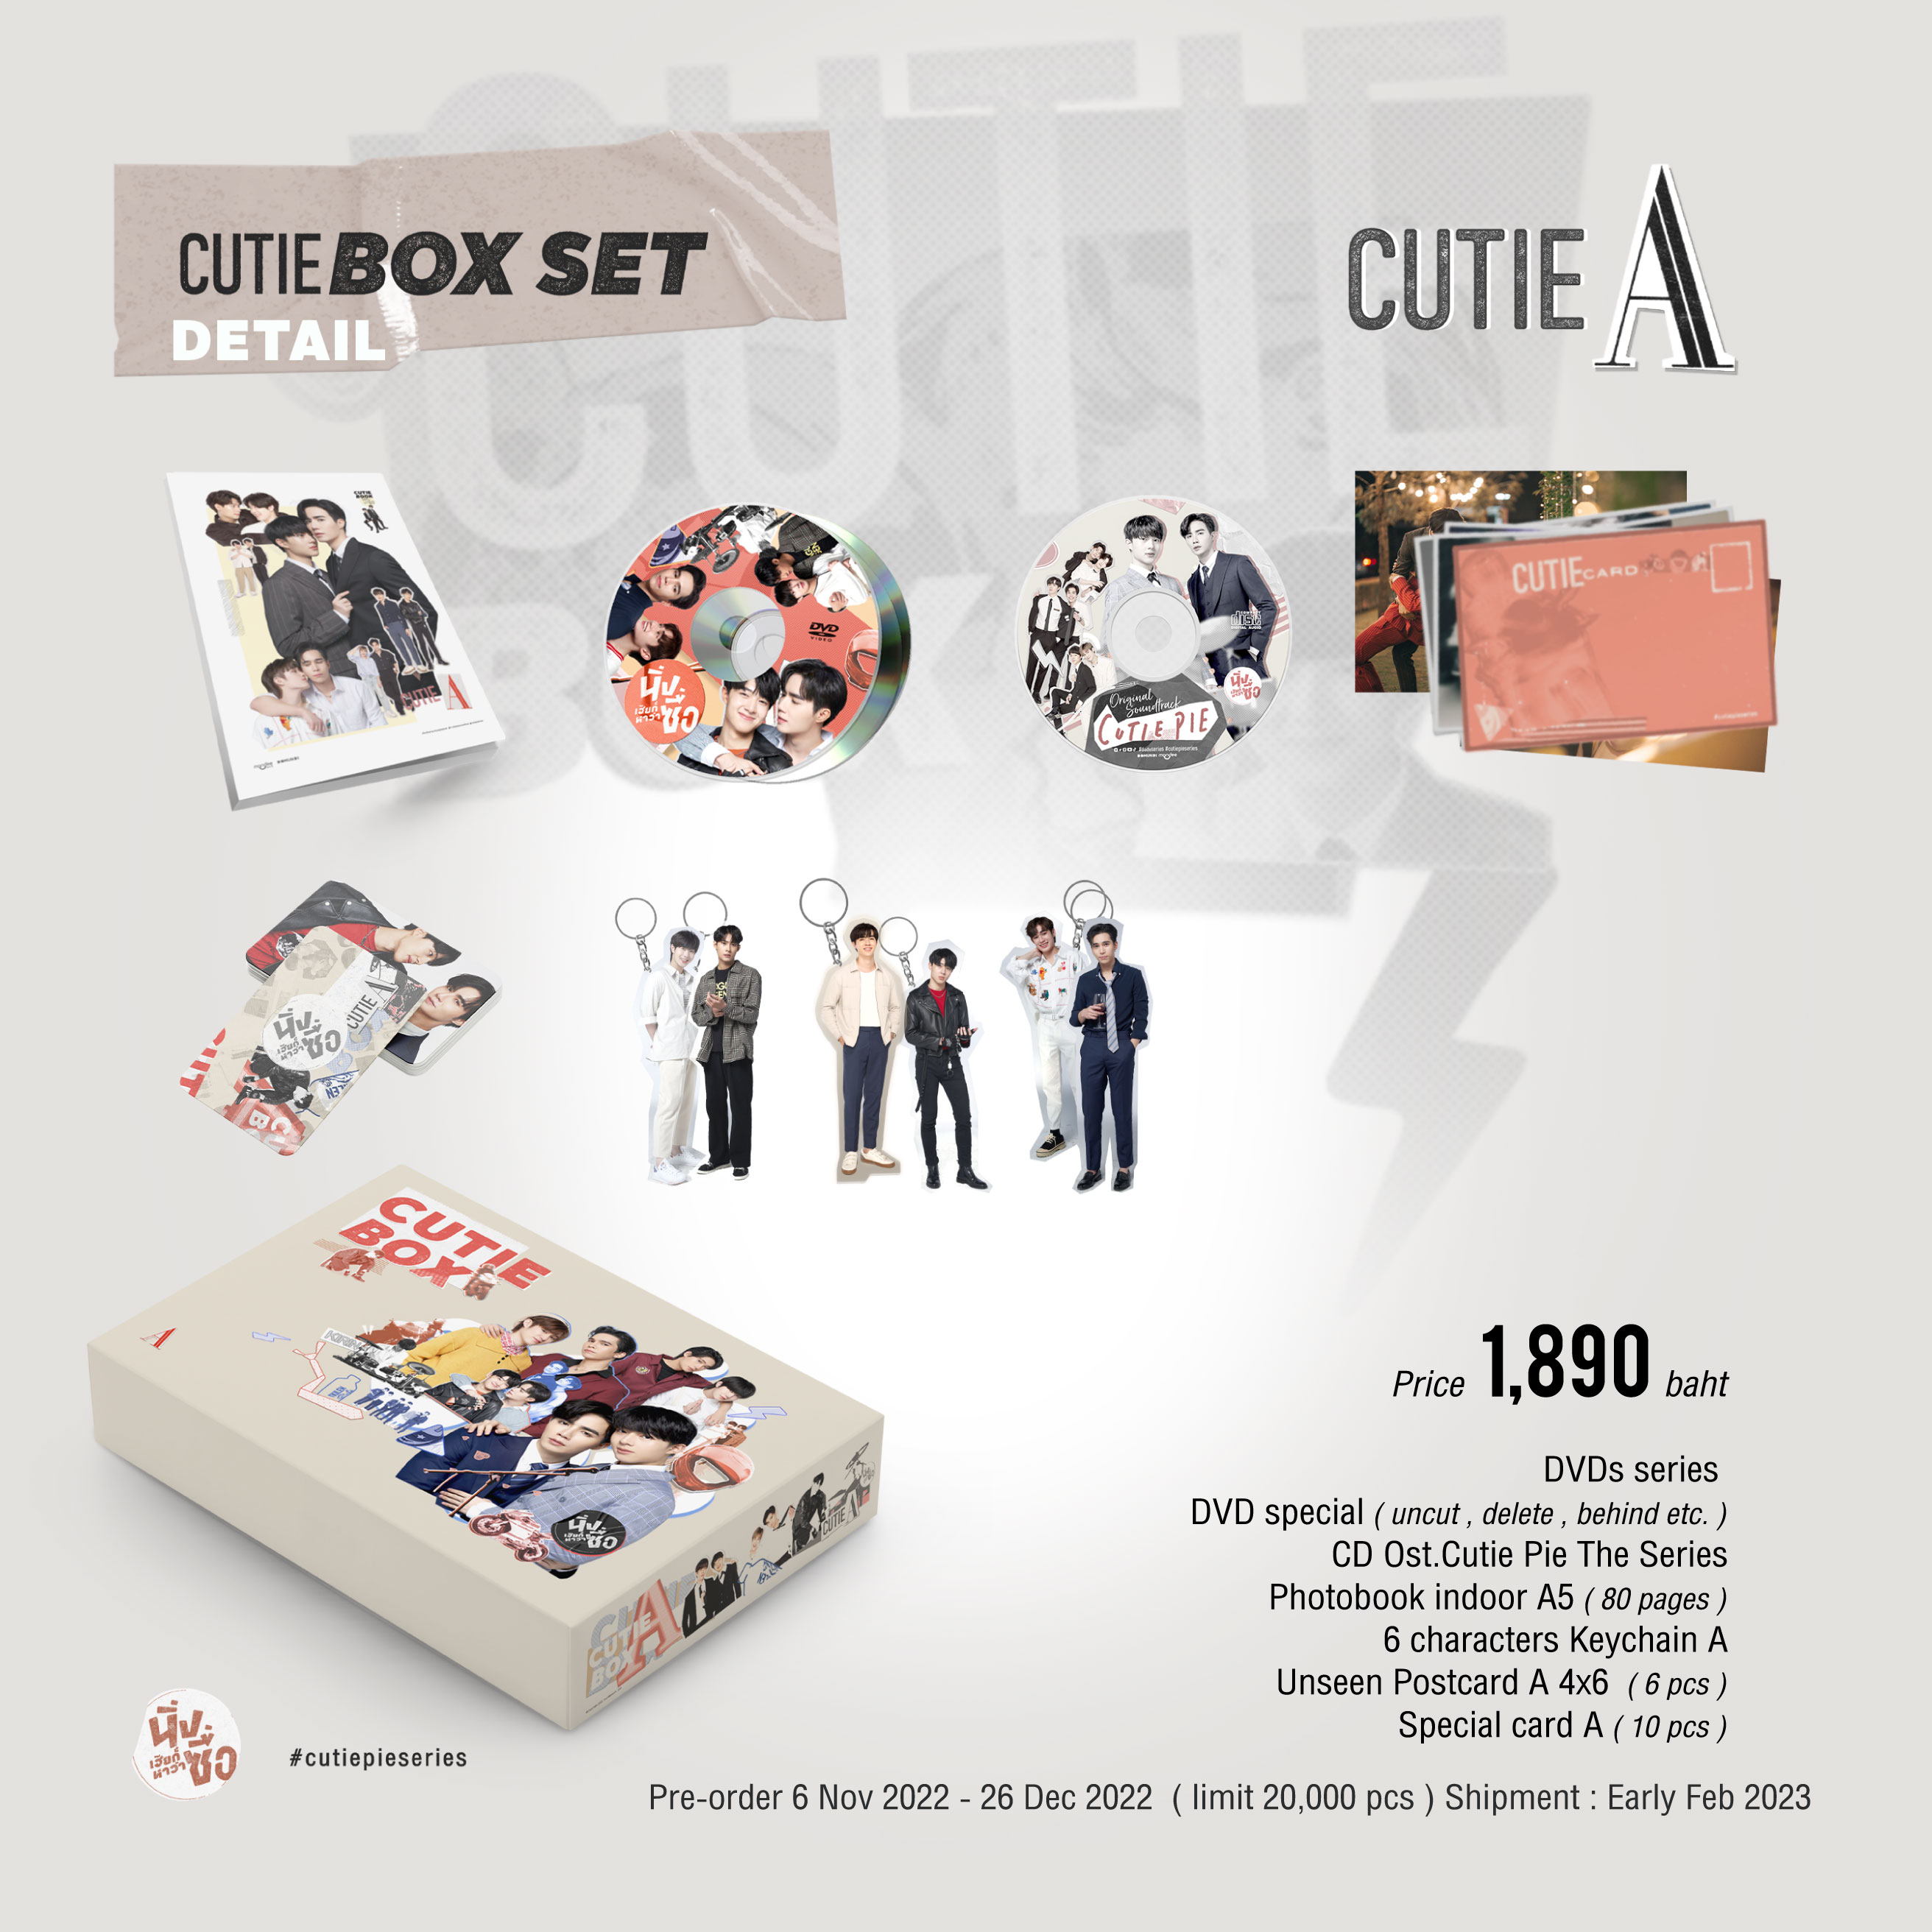 นิ่งเฮียก็หาว่าซื่อ  Cutie Pie Series on X: Pre-Order CutieBox ❤️ Period  : 6 Nov (12 PM) - 26 Dec 2022 - Set A : 1,890 baht - Set B : 1,990 baht 